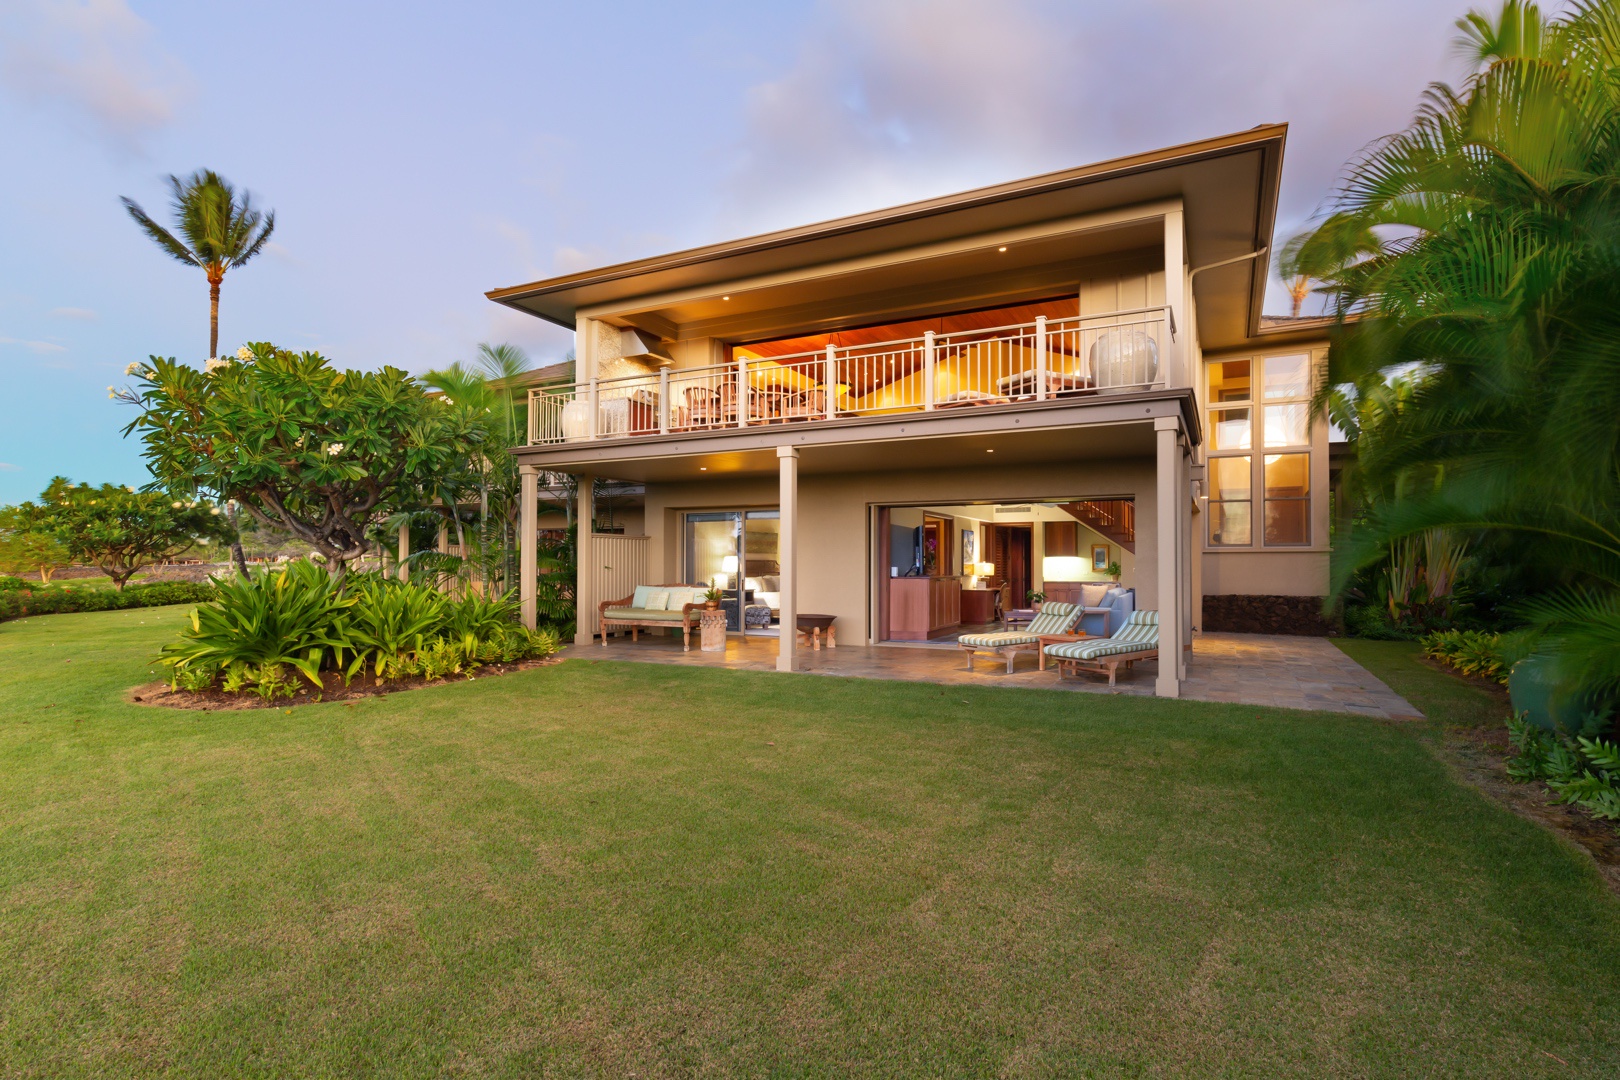 Kailua Kona Vacation Rentals, 3BD Ke Alaula Villa (210A) at Four Seasons Resort at Hualalai - View of the back of the home and yard at sunset.